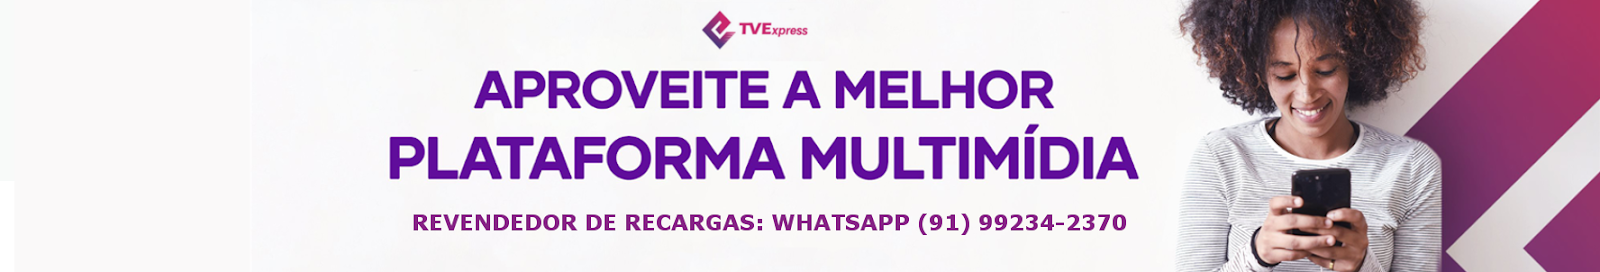 TV EXPRESS - R$ 18,50 por Mês | Todos Canais Liberados